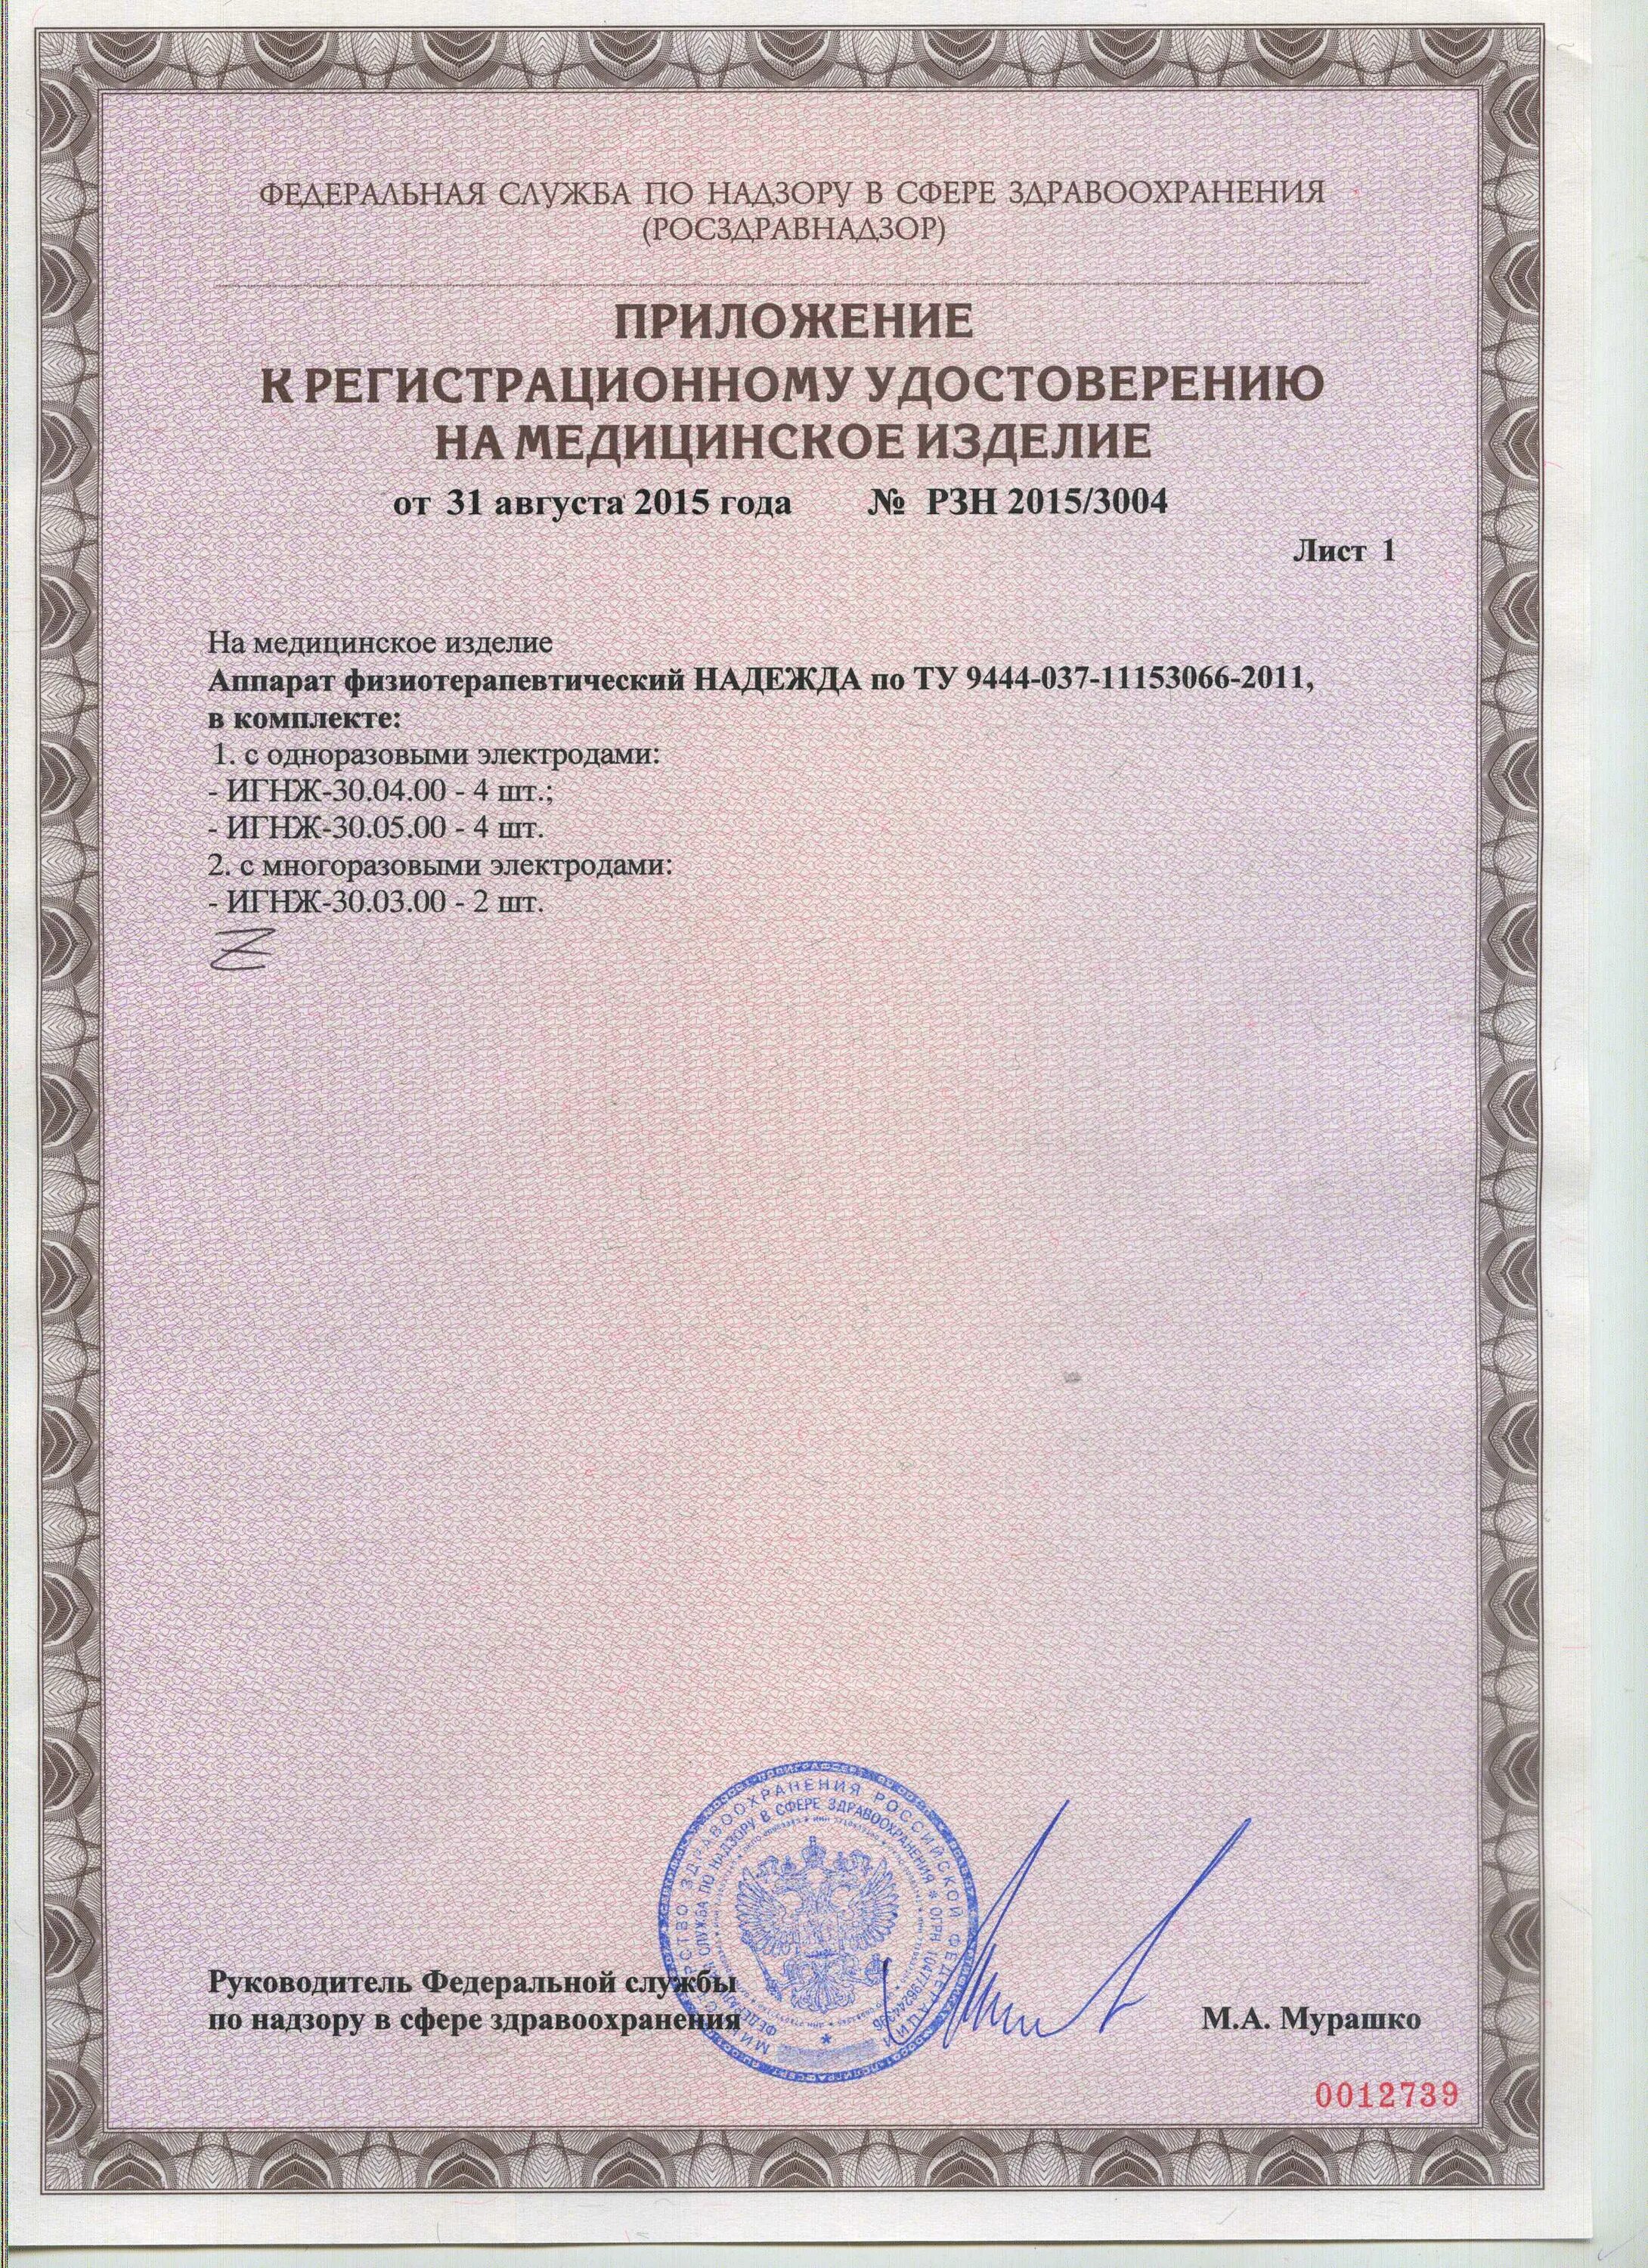 Алкотестер Динго е-010 сертификат. Сайт росздравнадзора проверить регистрационное